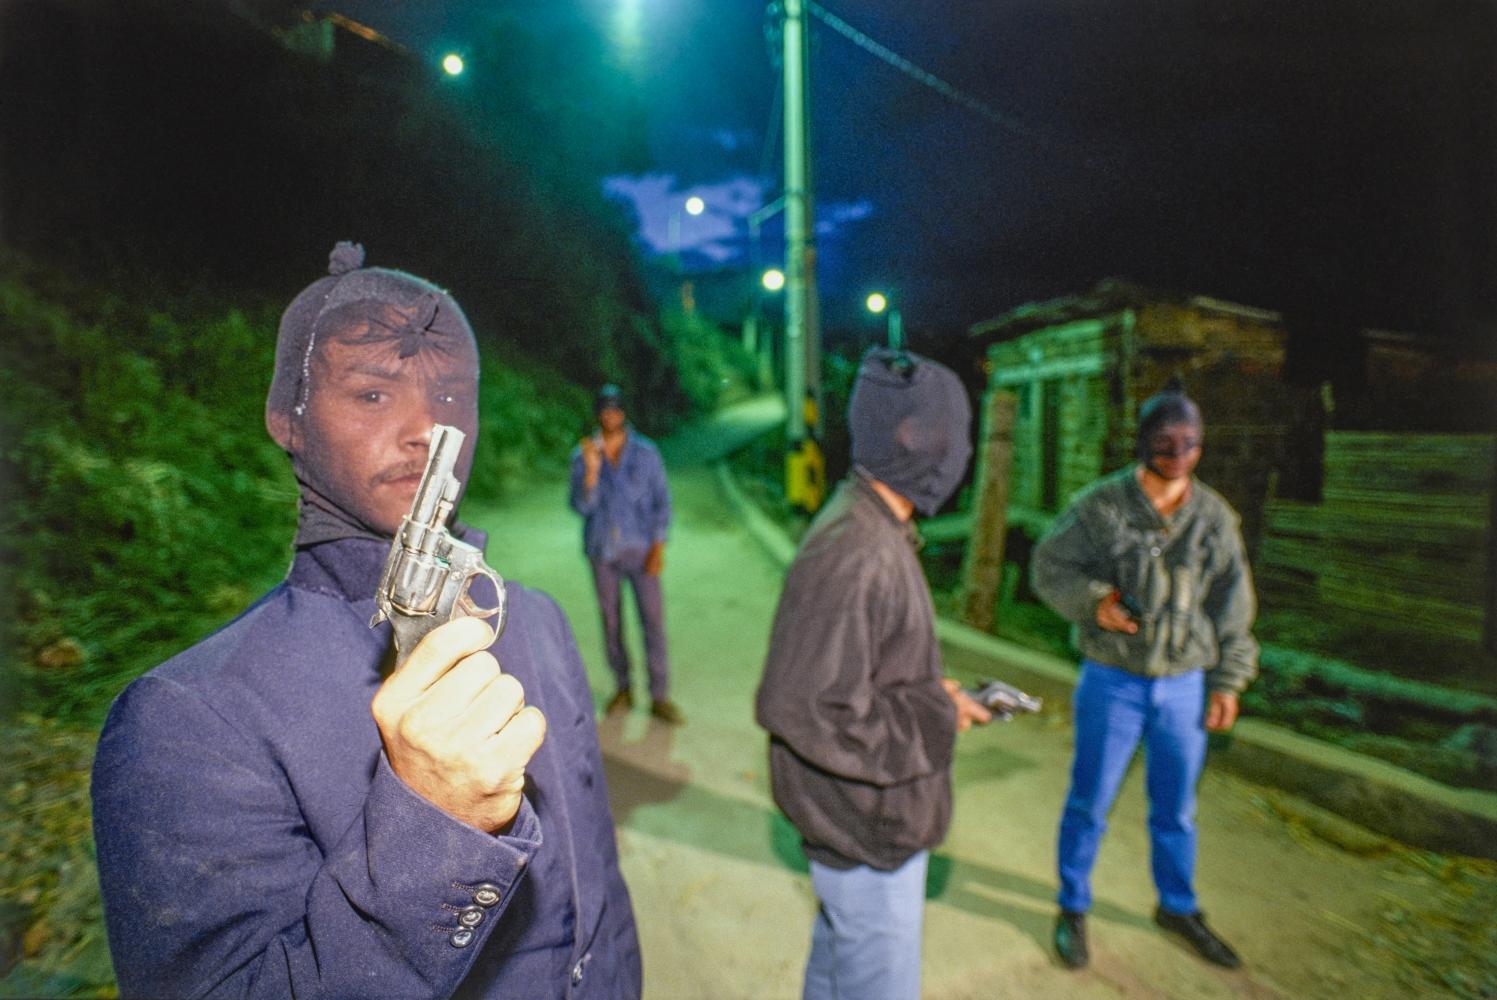 Axel Krause, Kolumbien, Medellin, 1990: Autodefensa-Gruppe kämpft gegen Jugendbanden